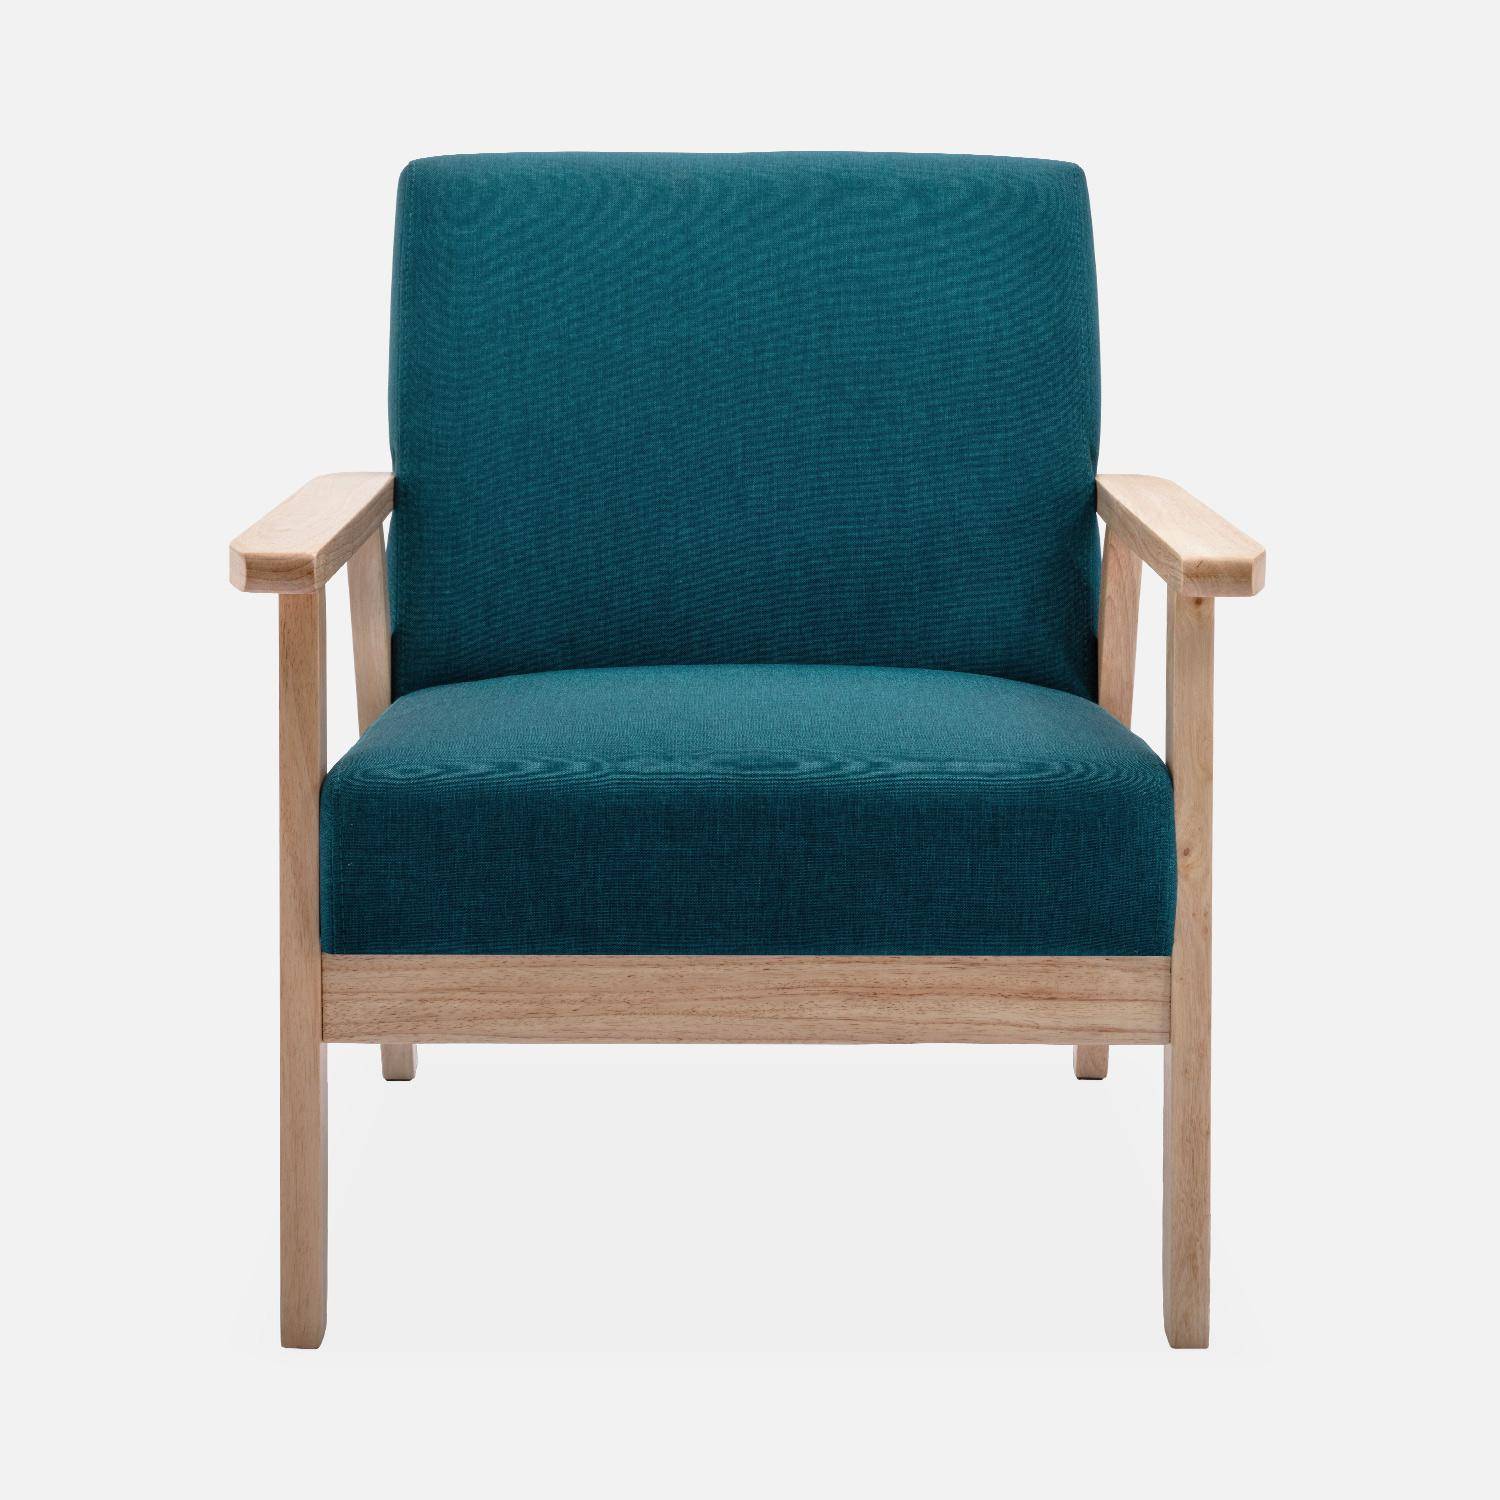 Banquette et fauteuil scandinave en bois et tissu bleu pétrole L 114 x l 69,5 x H 73cm,sweeek,Photo4